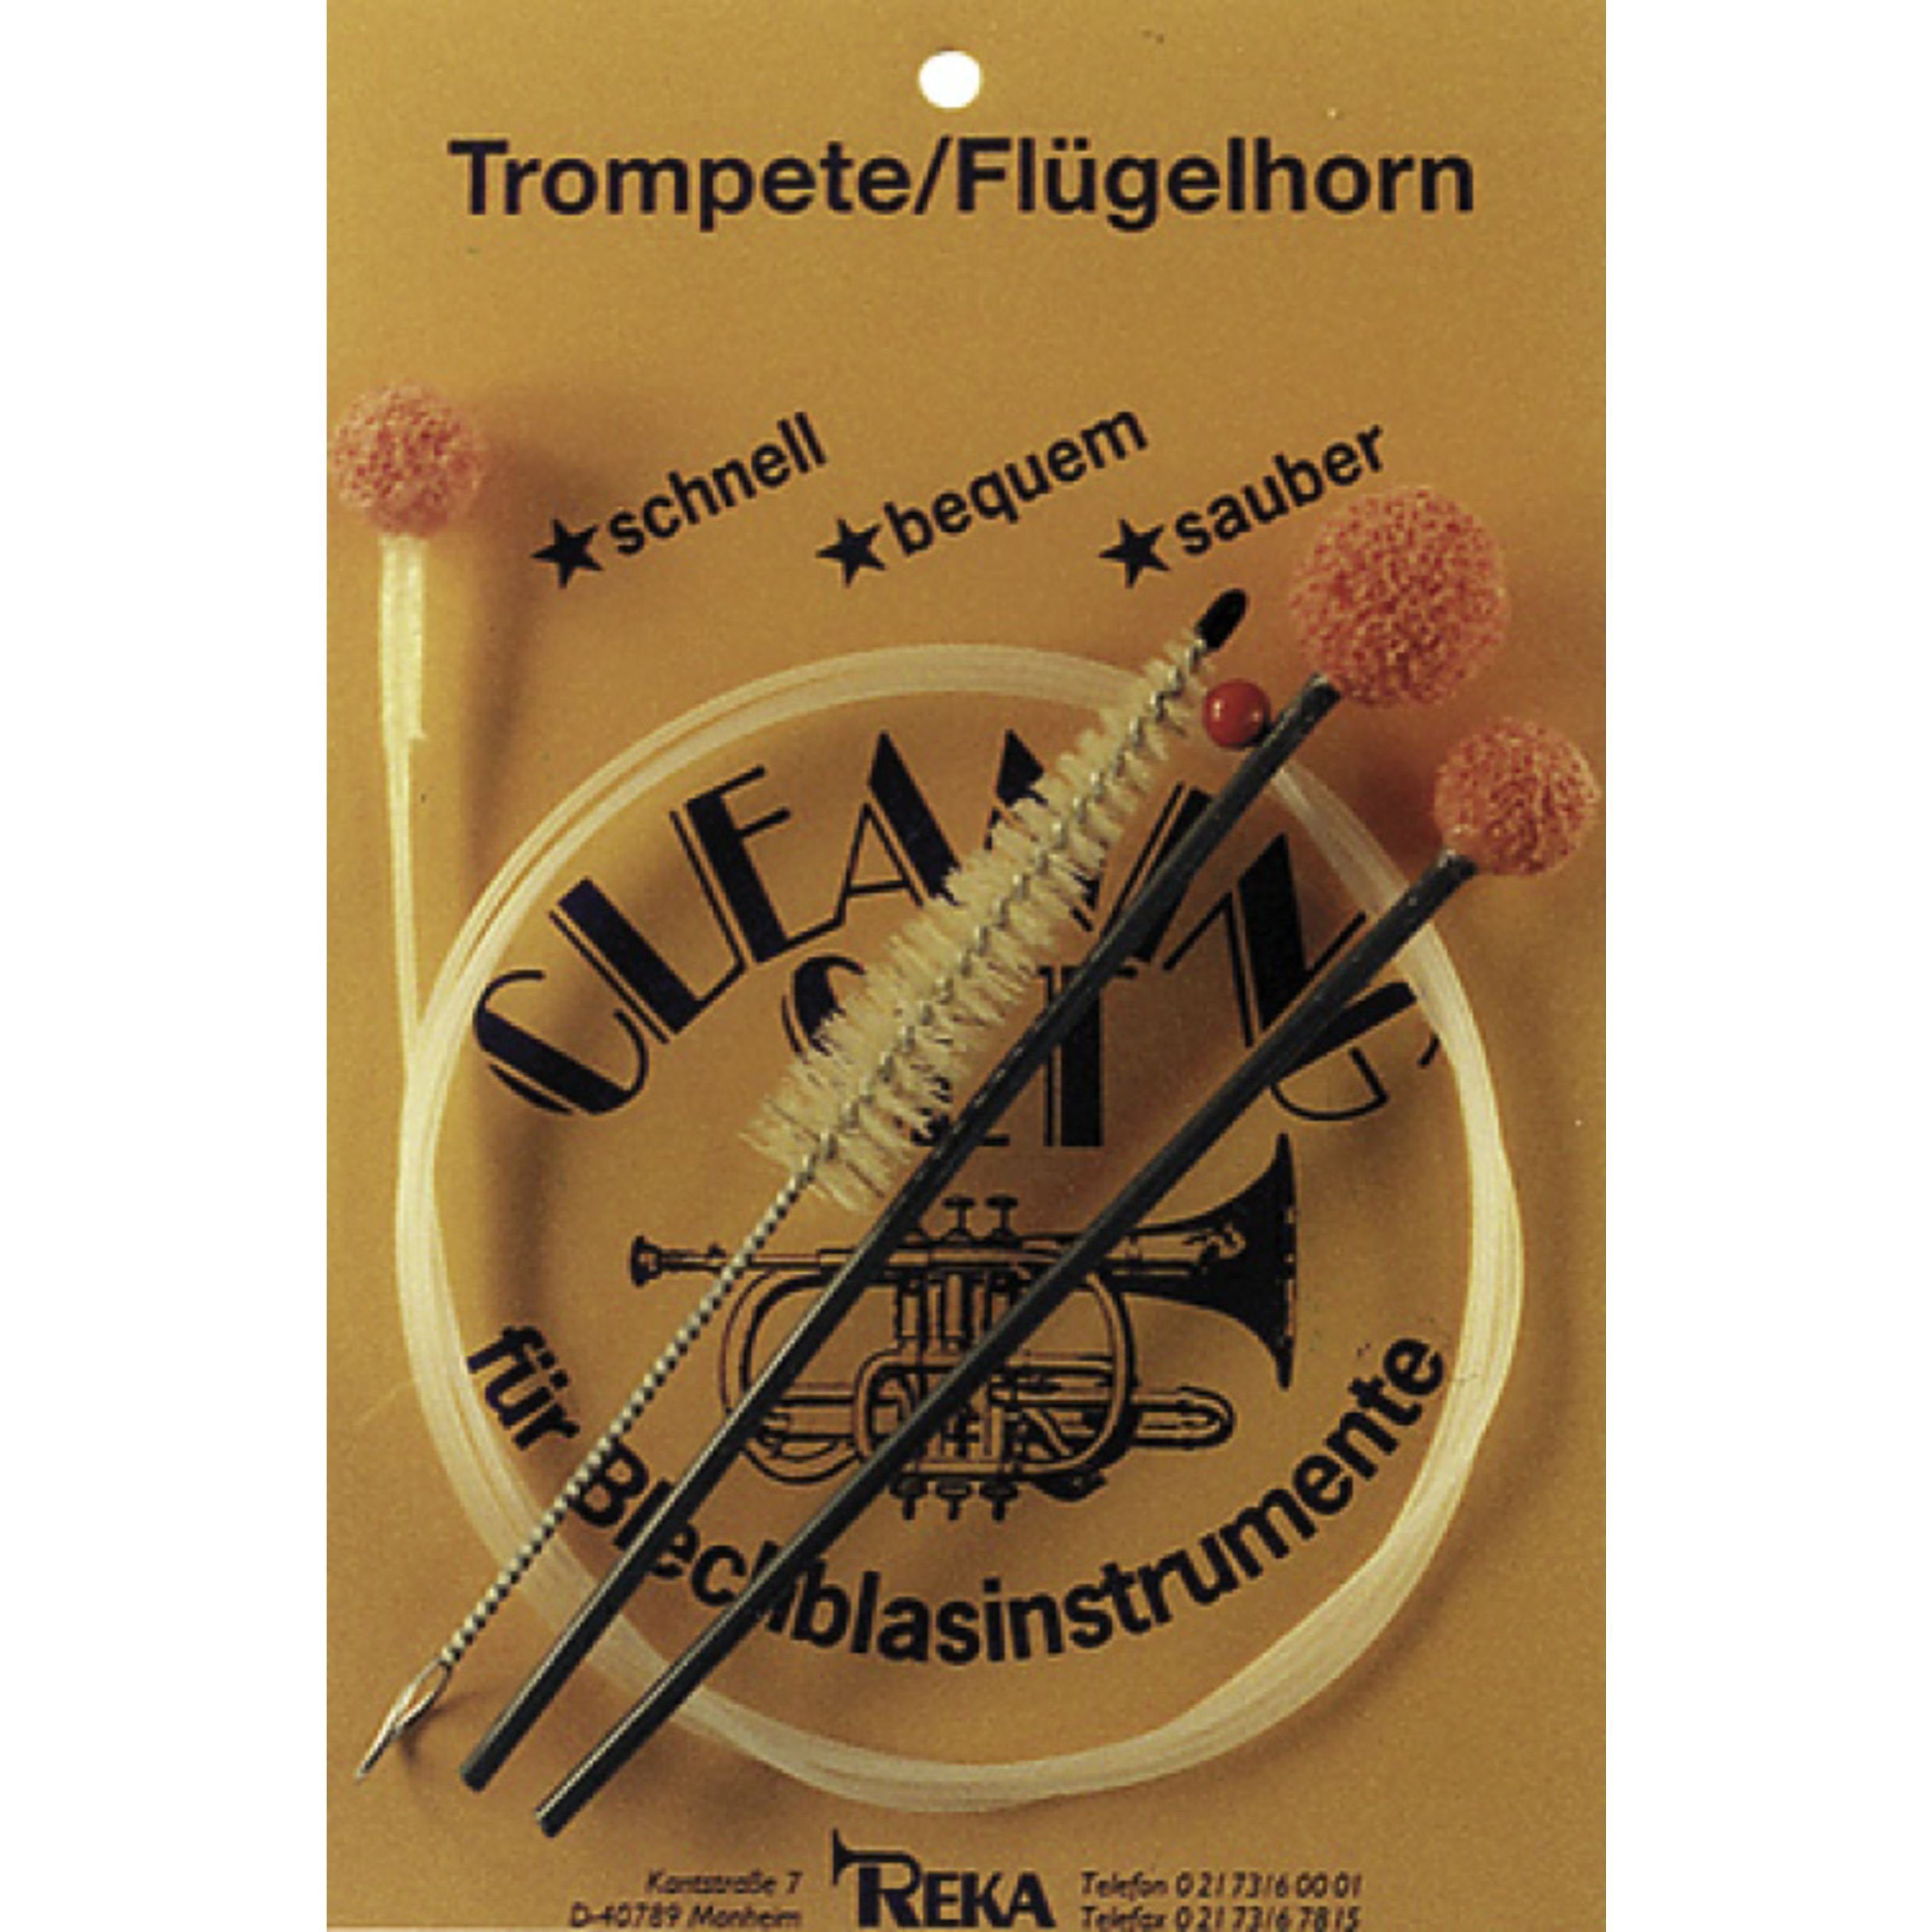 REKA Trompete, Reinigungsset für Trompete/Flügelhorn, Reinigungsset für Trompete/Flügelhorn - Zubehör für Blechbläser